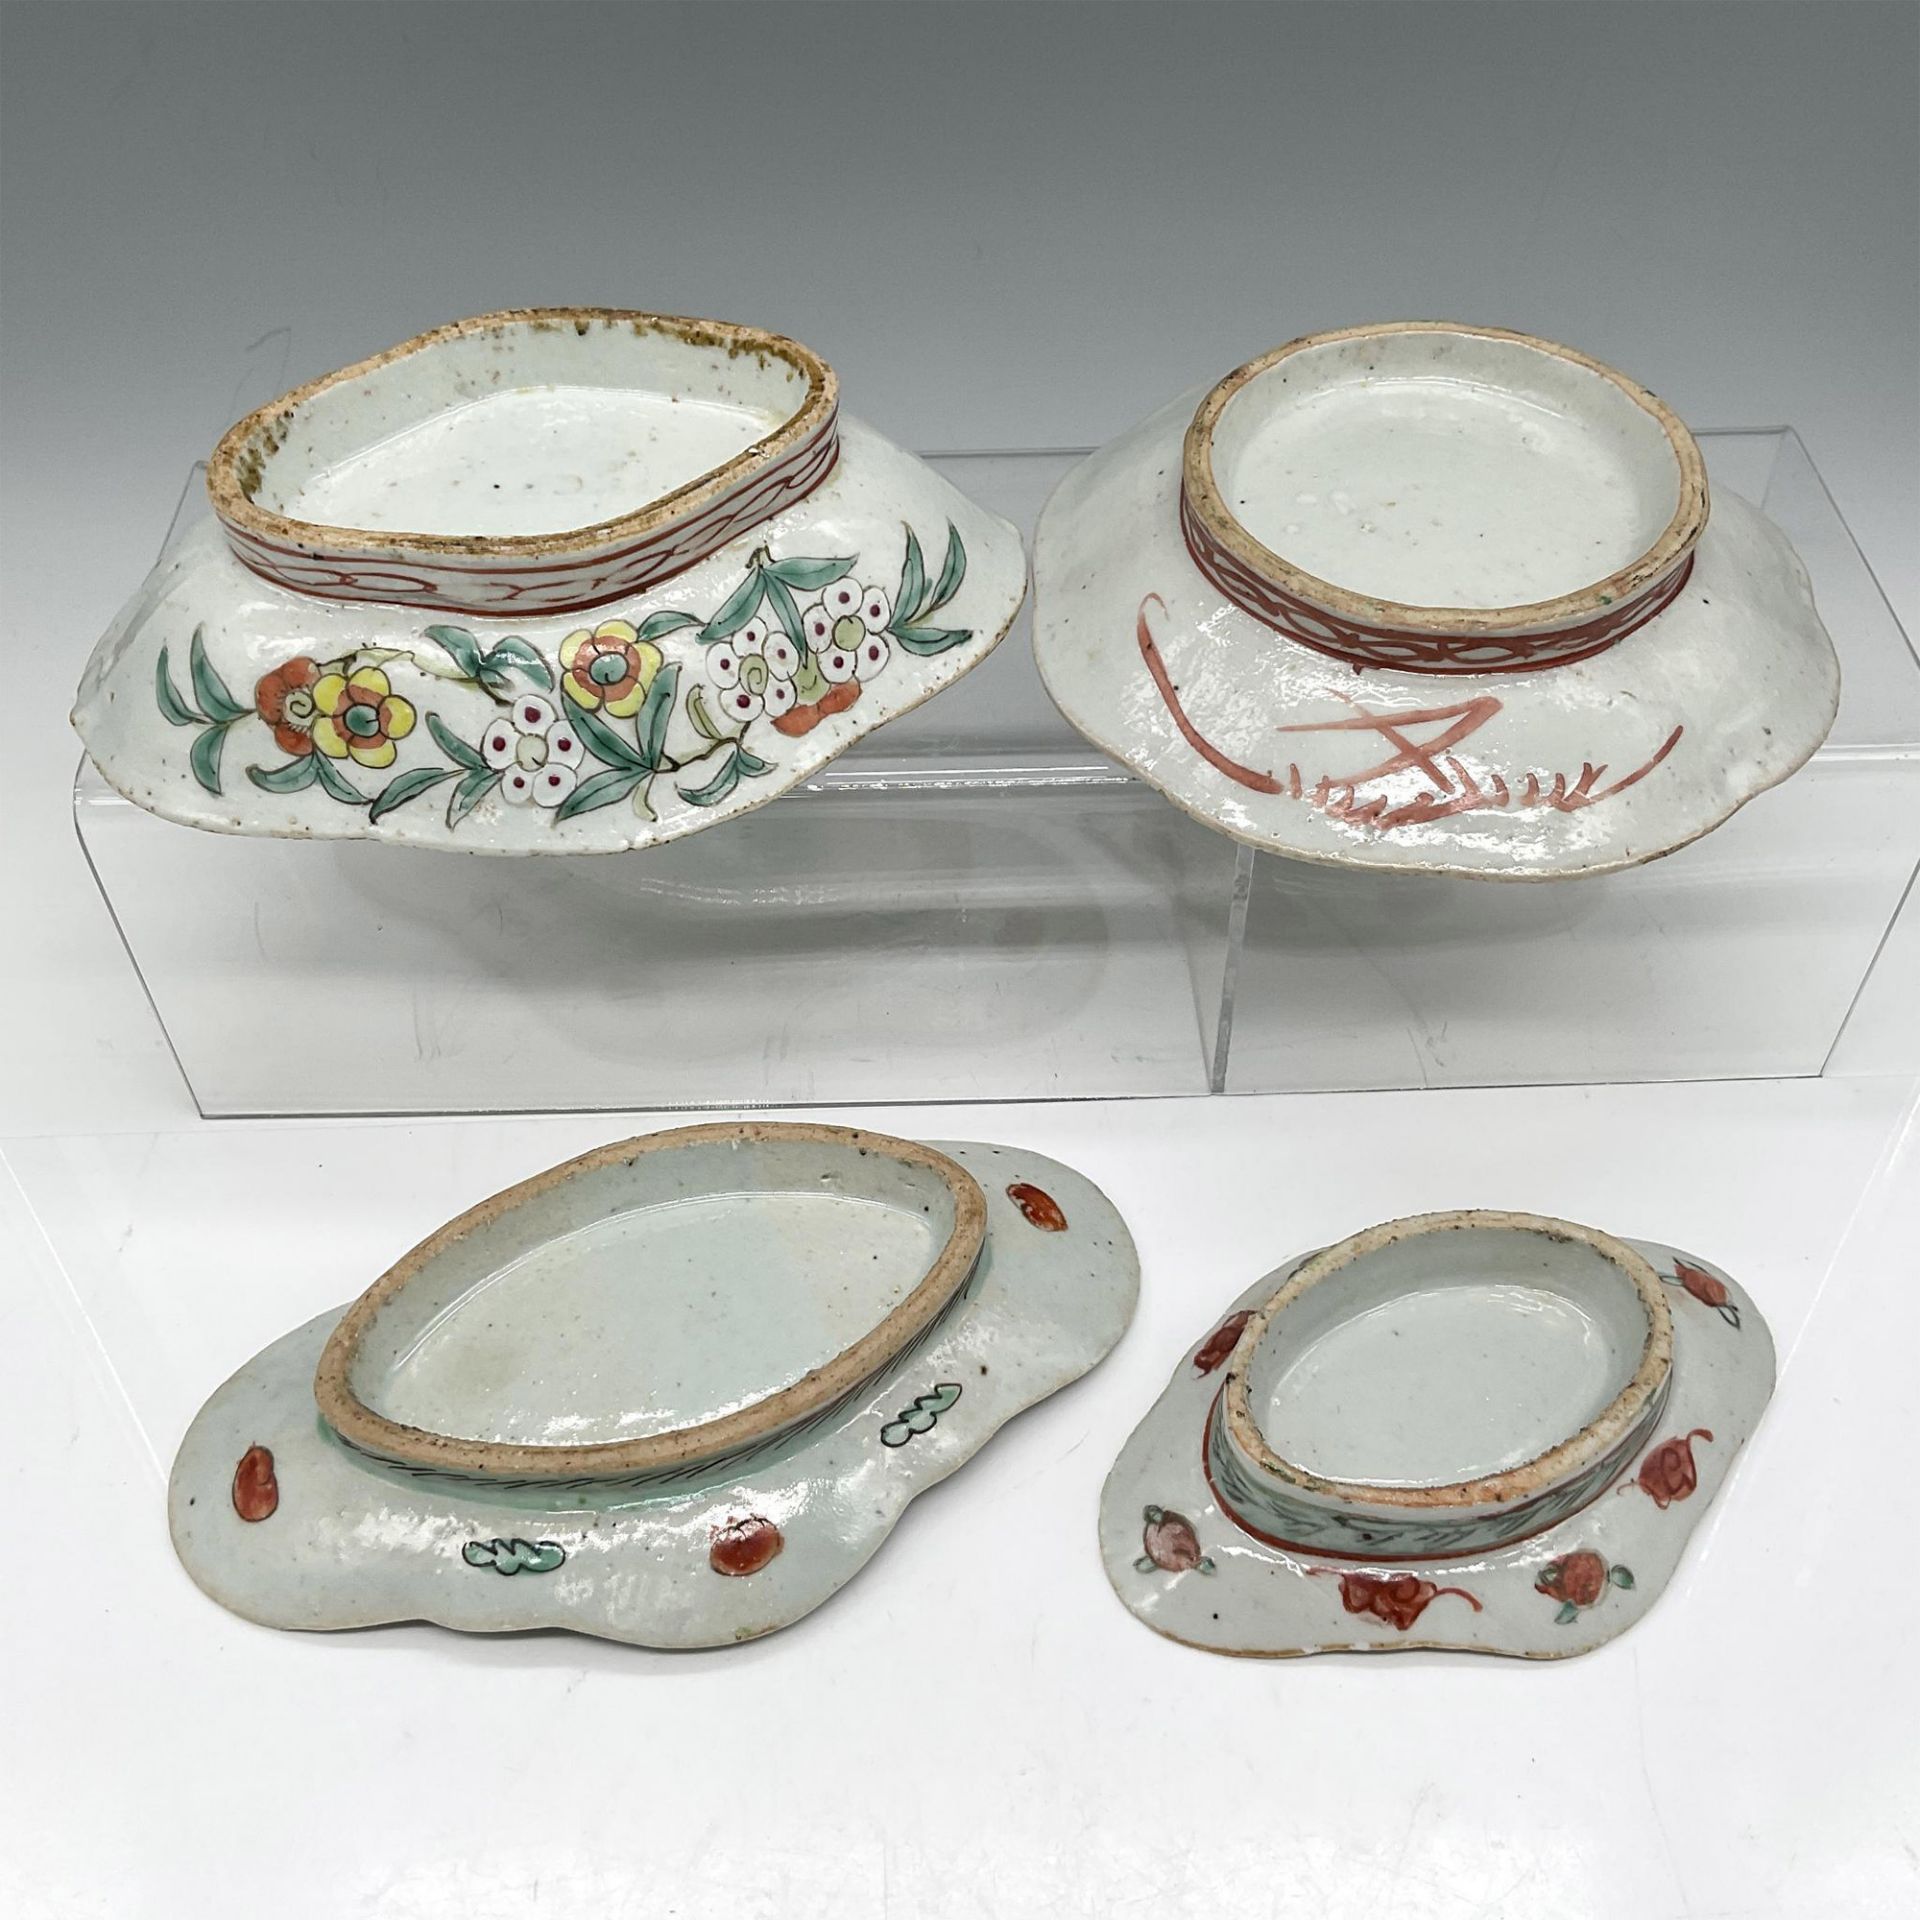 4pc Chinese Enameled Bowls - Image 3 of 3